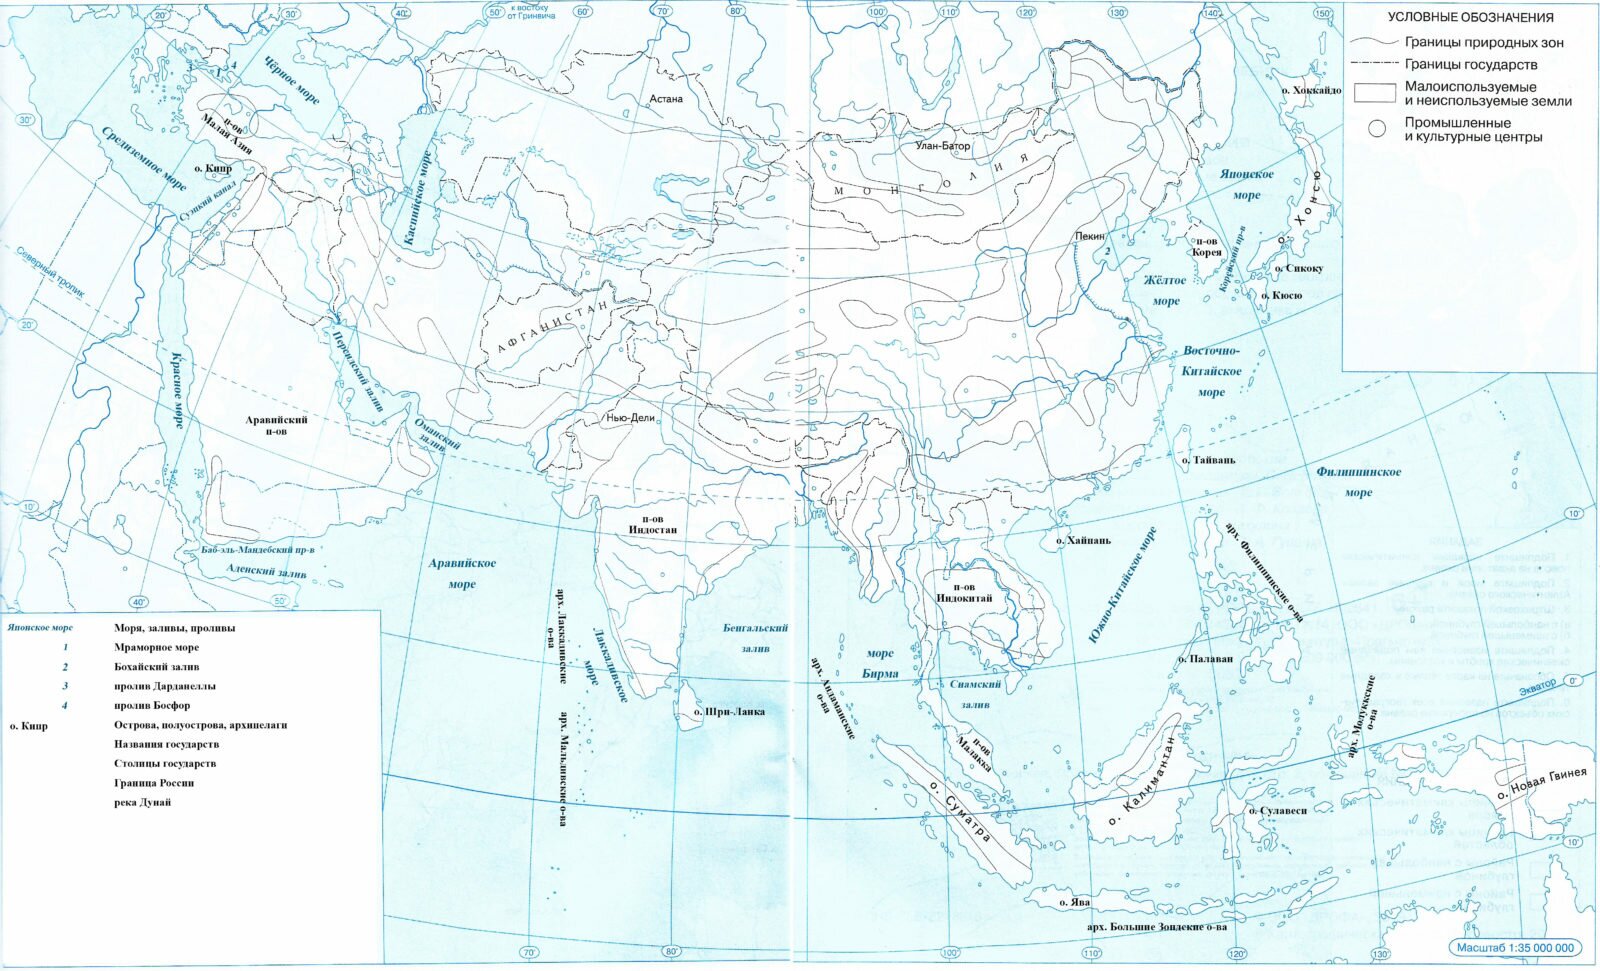 Контурная карта зарубежной азии 11 класс для печати